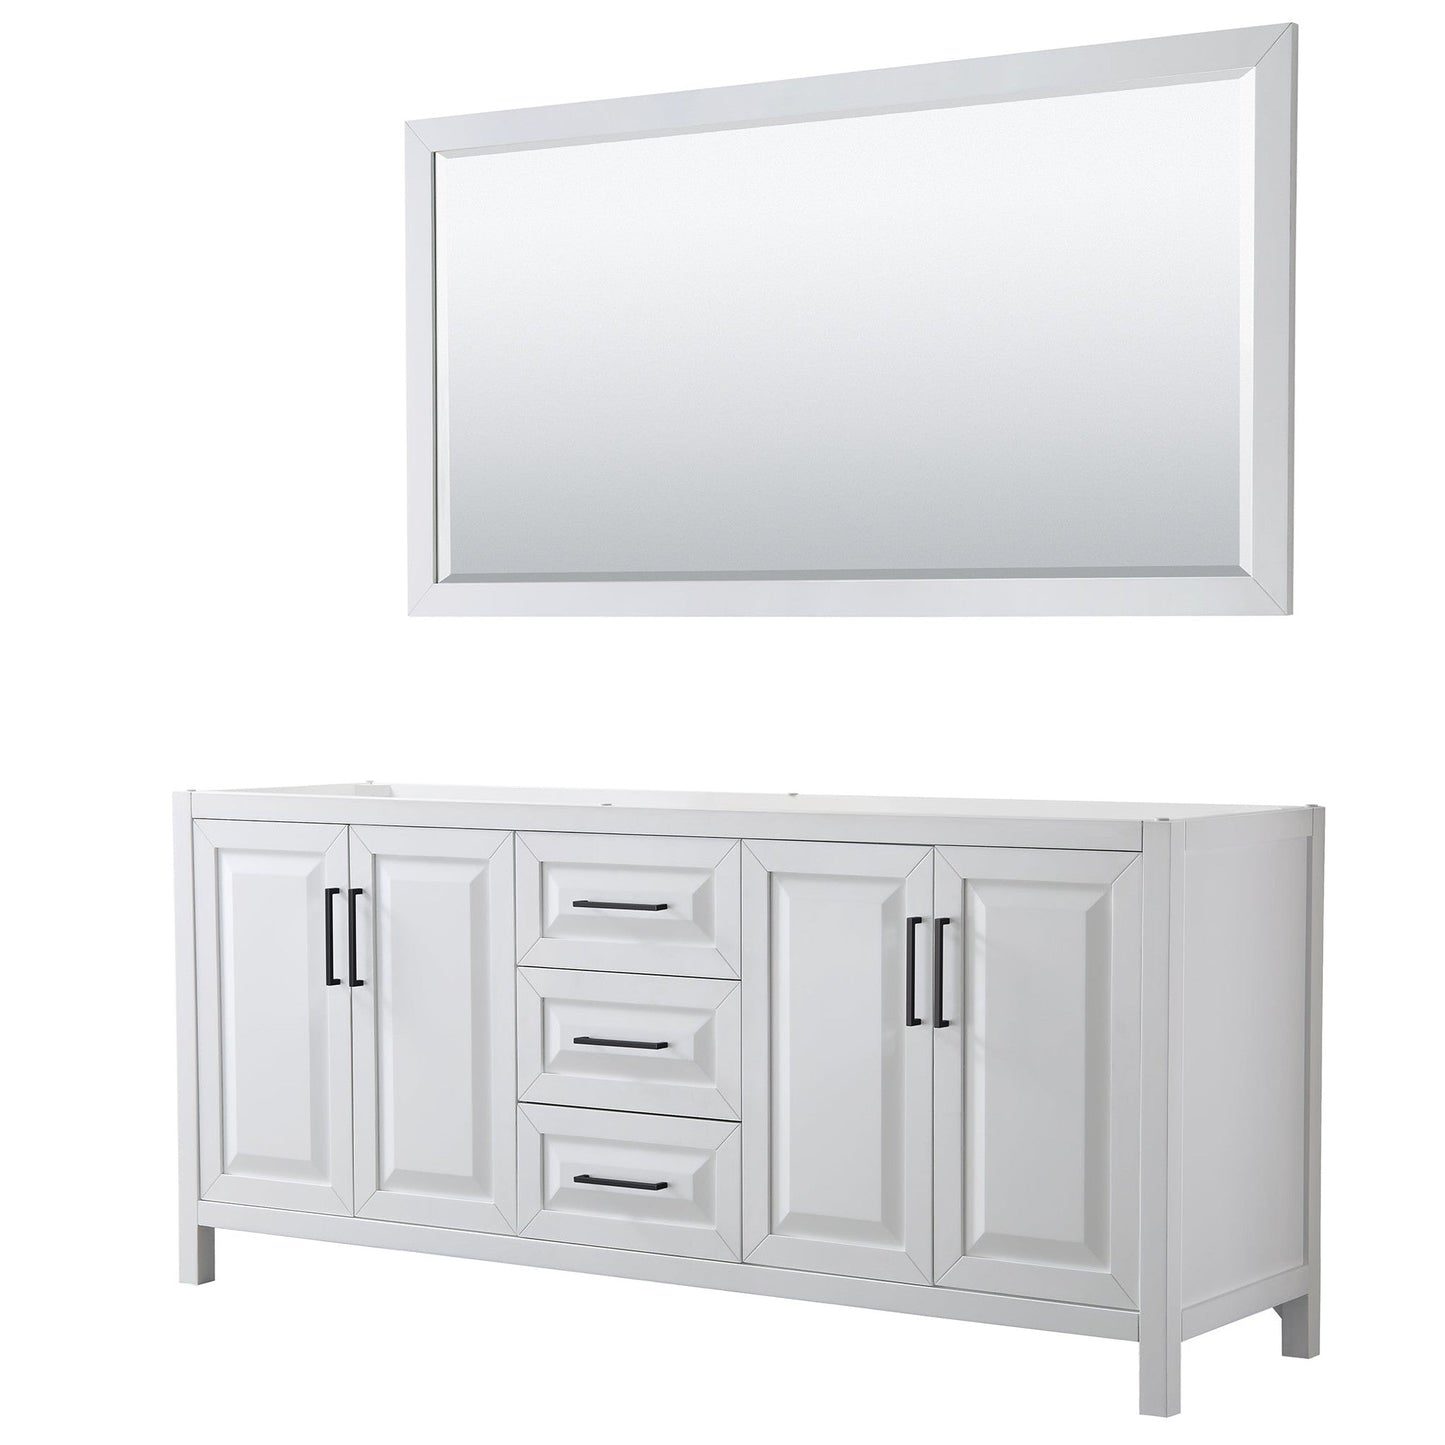 Daria 80" Double Bathroom Vanity in White, No Countertop, No Sink, Matte Black Trim, 70" Mirror